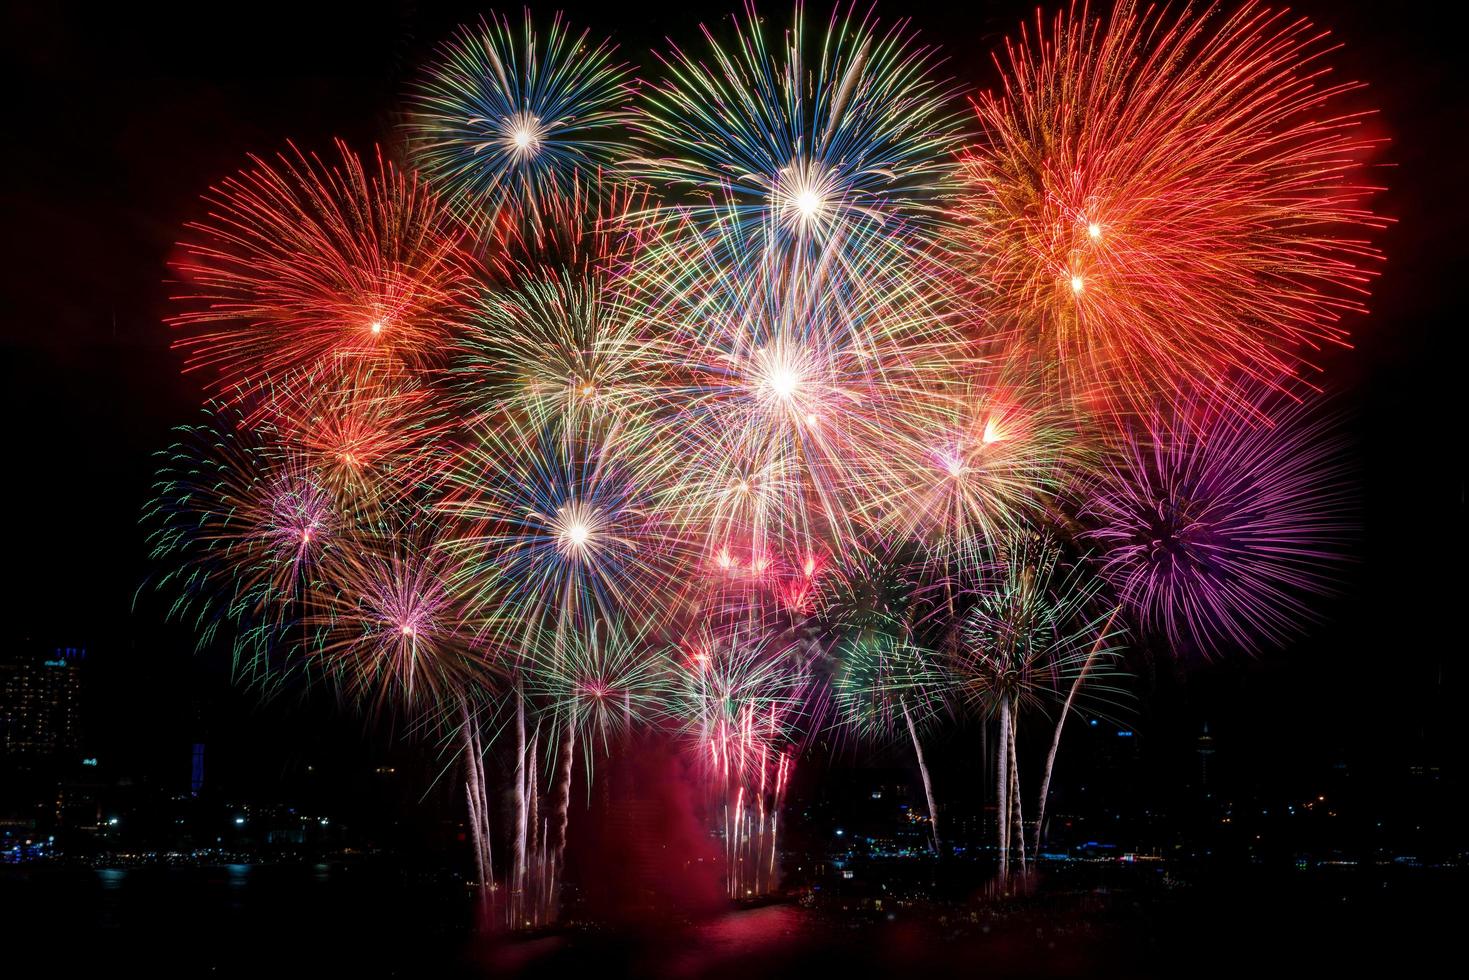 kleurrijk vuurwerk van verschillende kleuren 's nachts met feest- en jubileumconcept foto